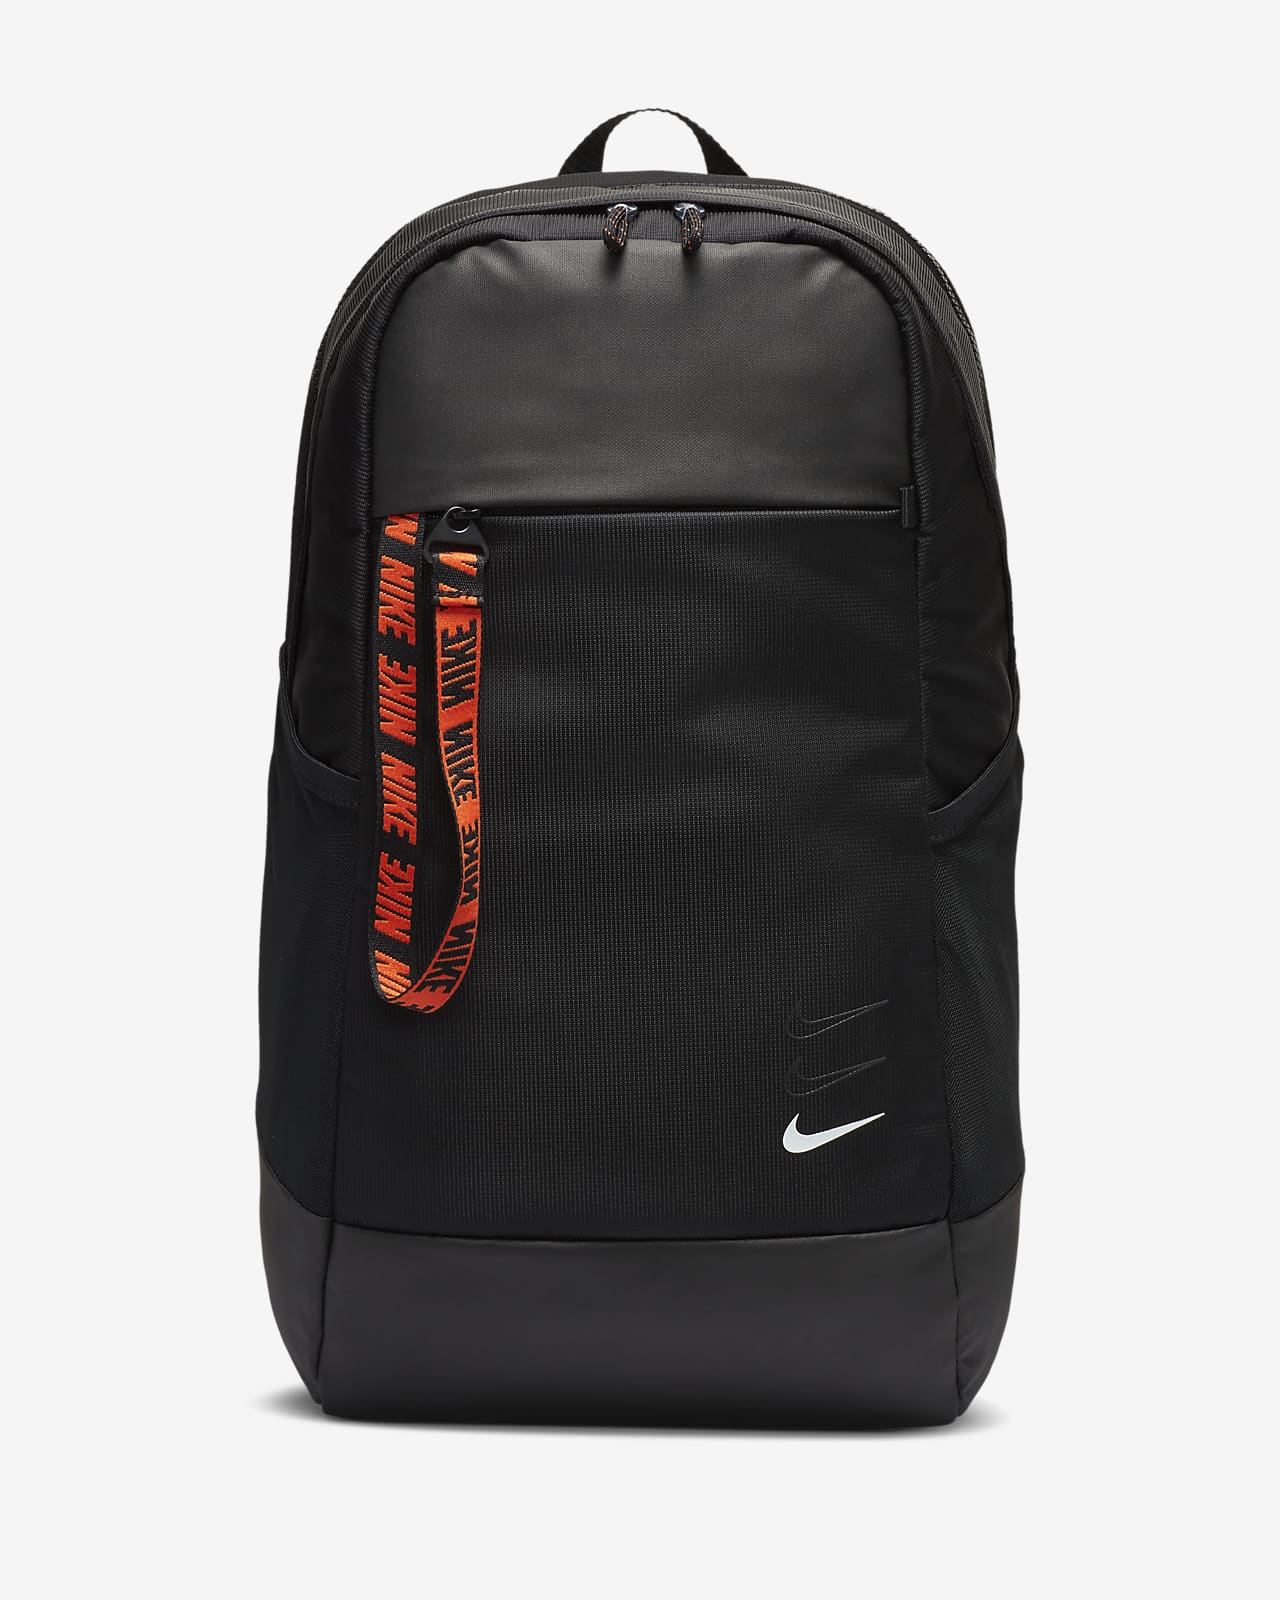 nike female backpack